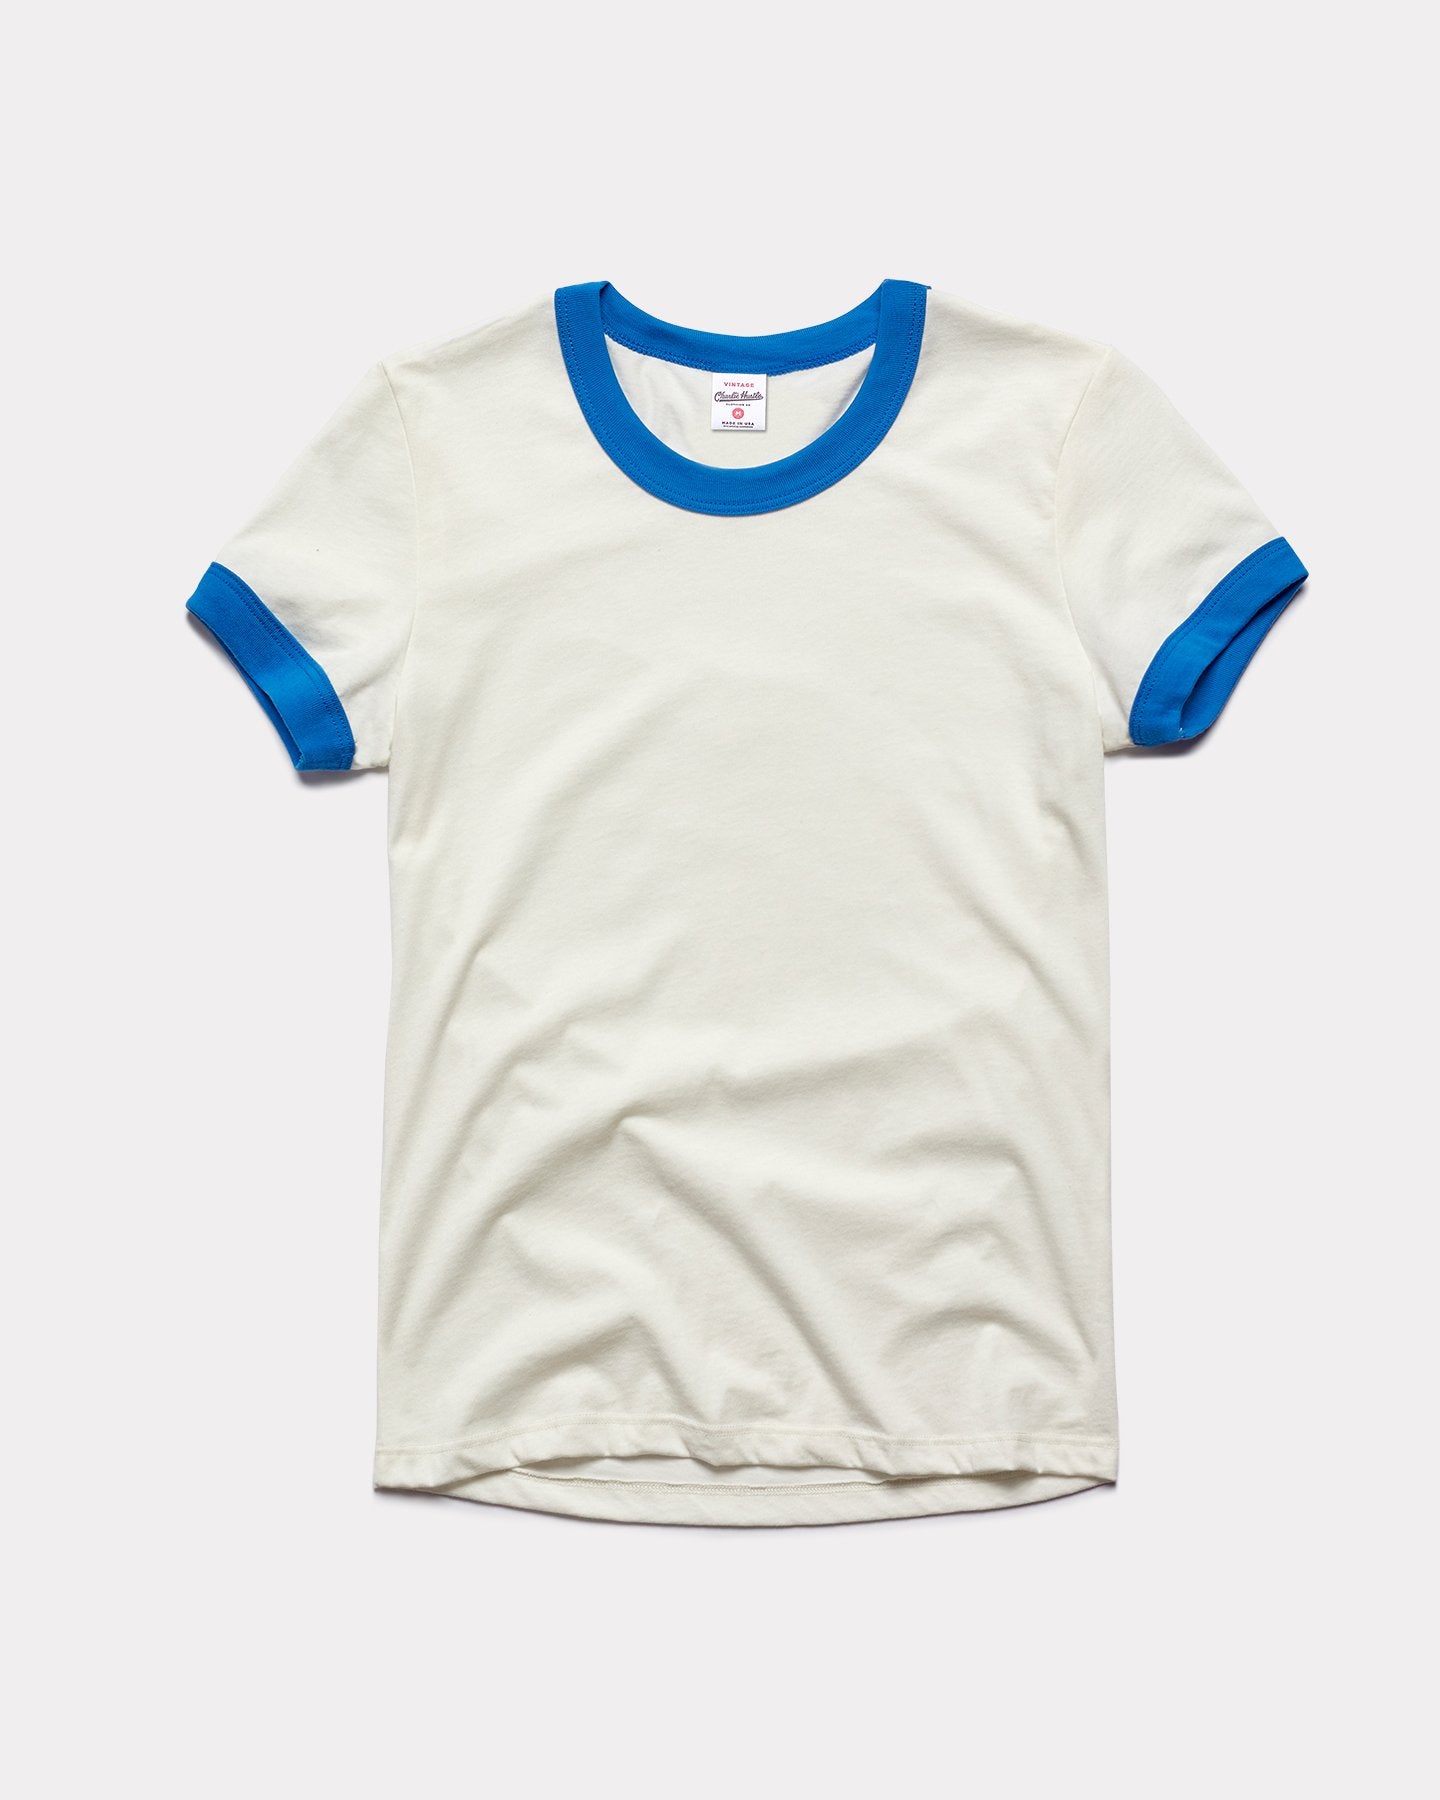 Women's White & Blue Vintage Ringer T-Shirt | Charlie Hustle 3113 / XL